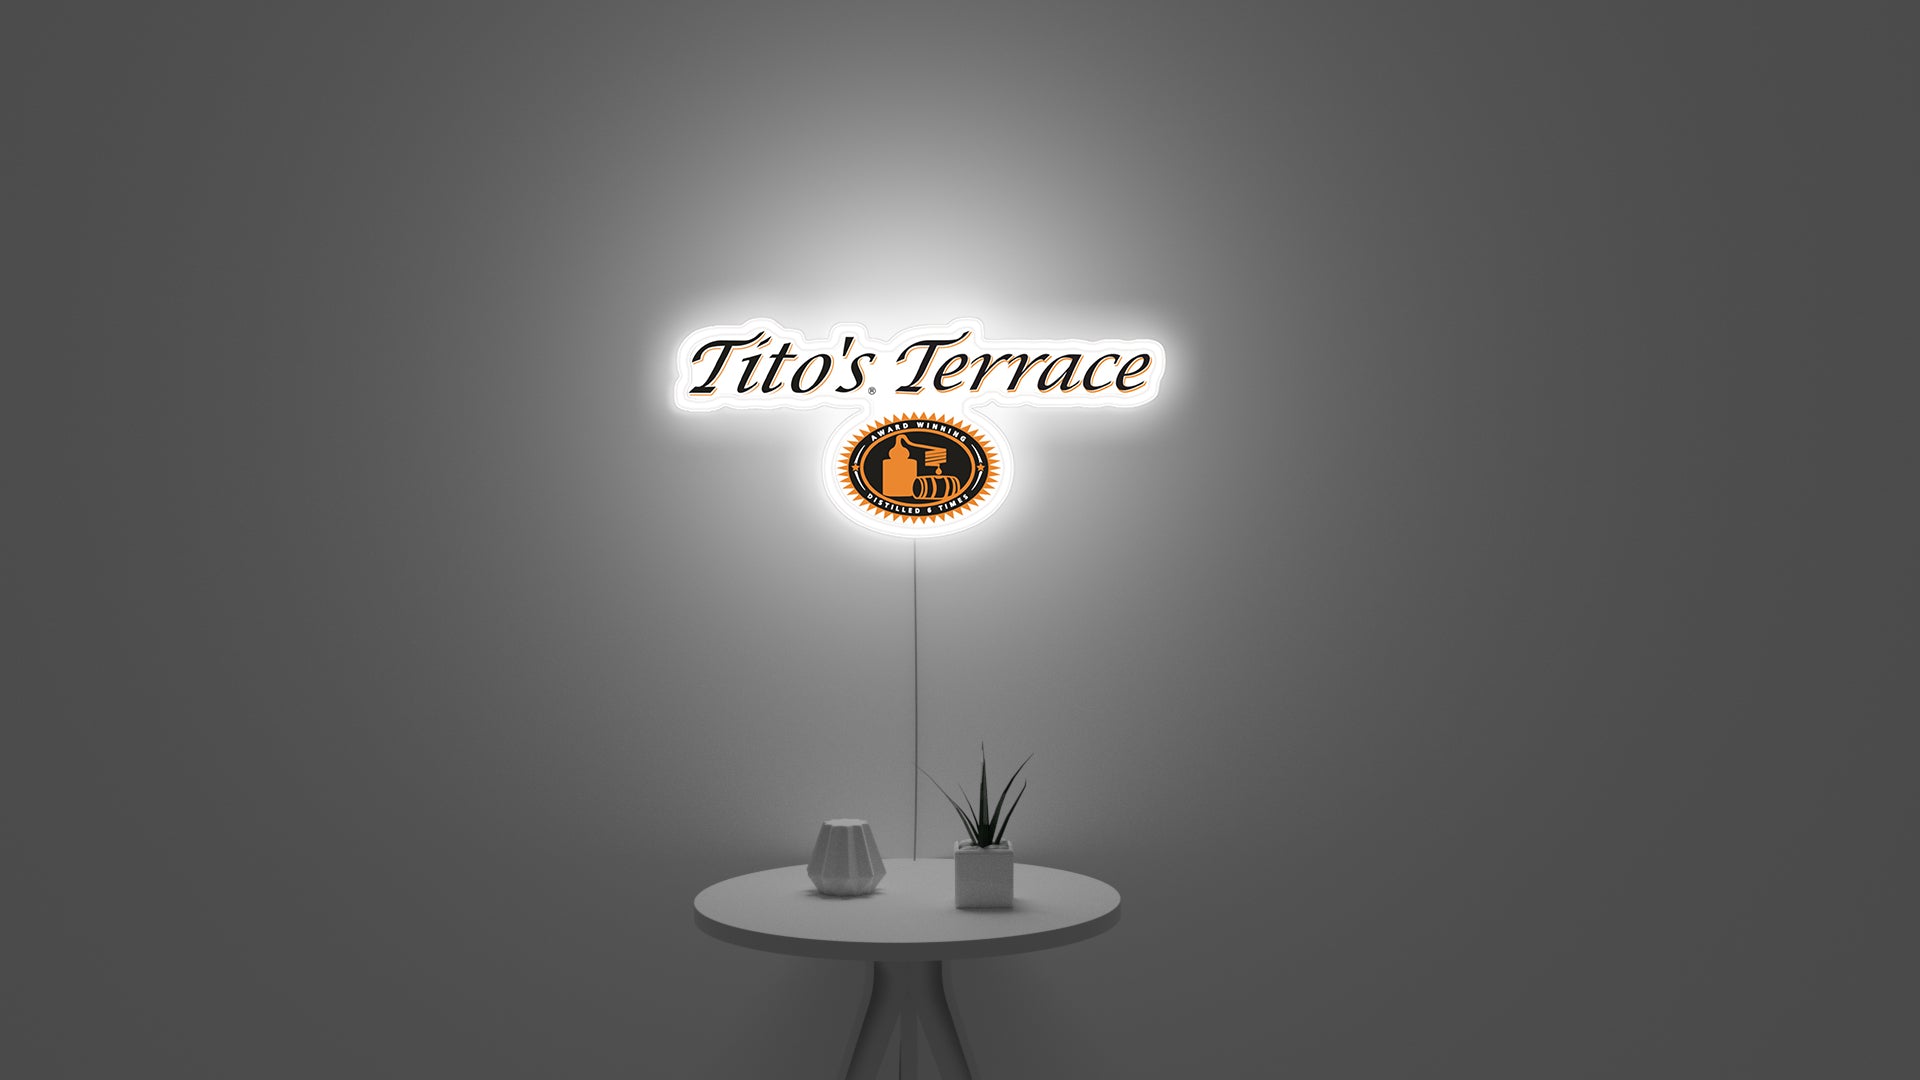 Tito's terrace neon sign